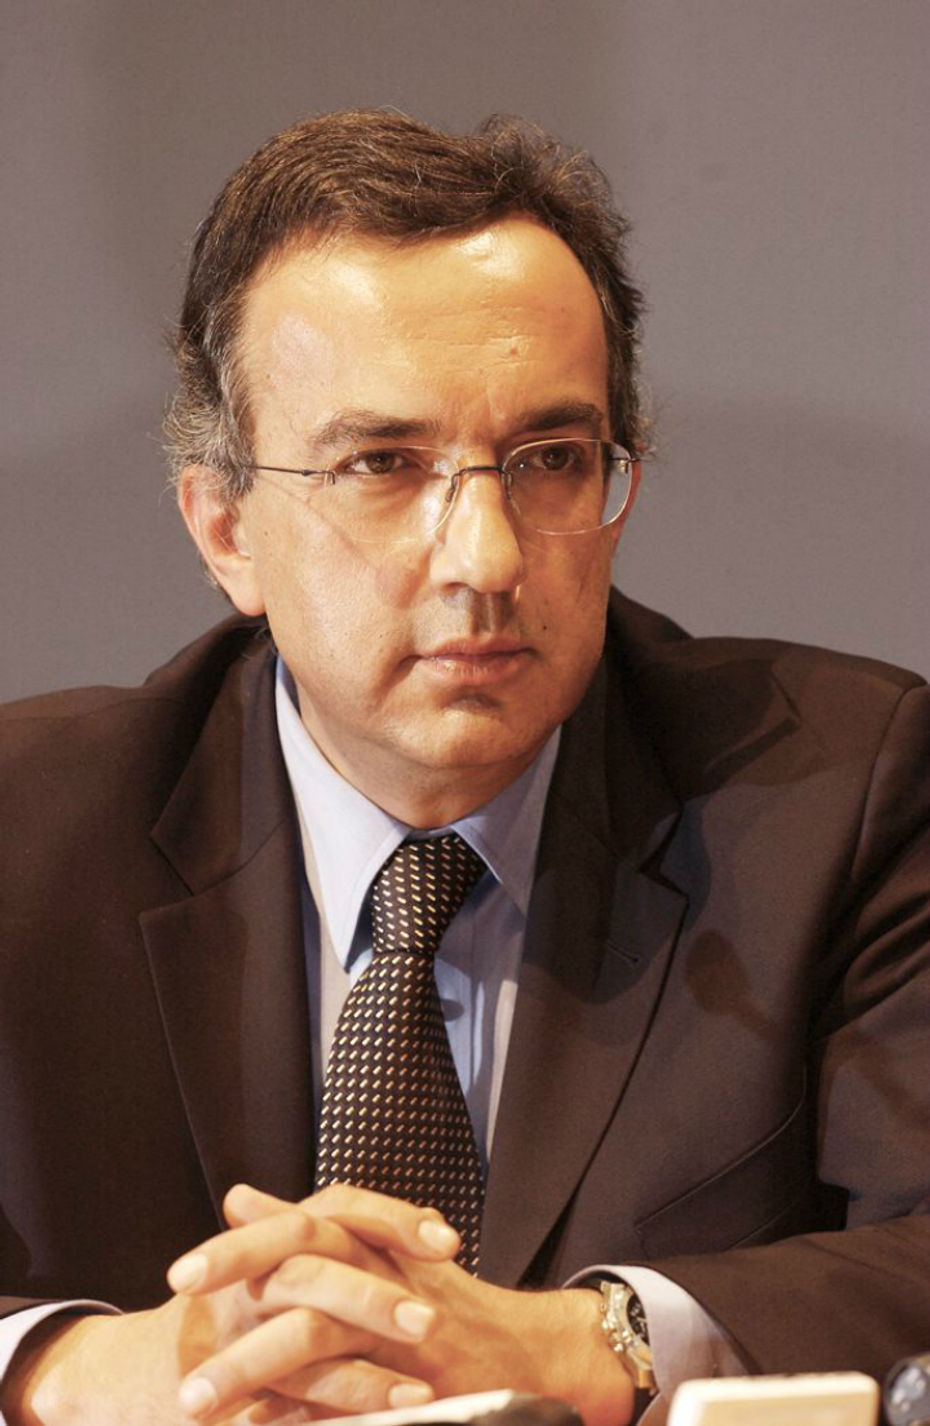 Sergio Marchionne 1952 - 2018